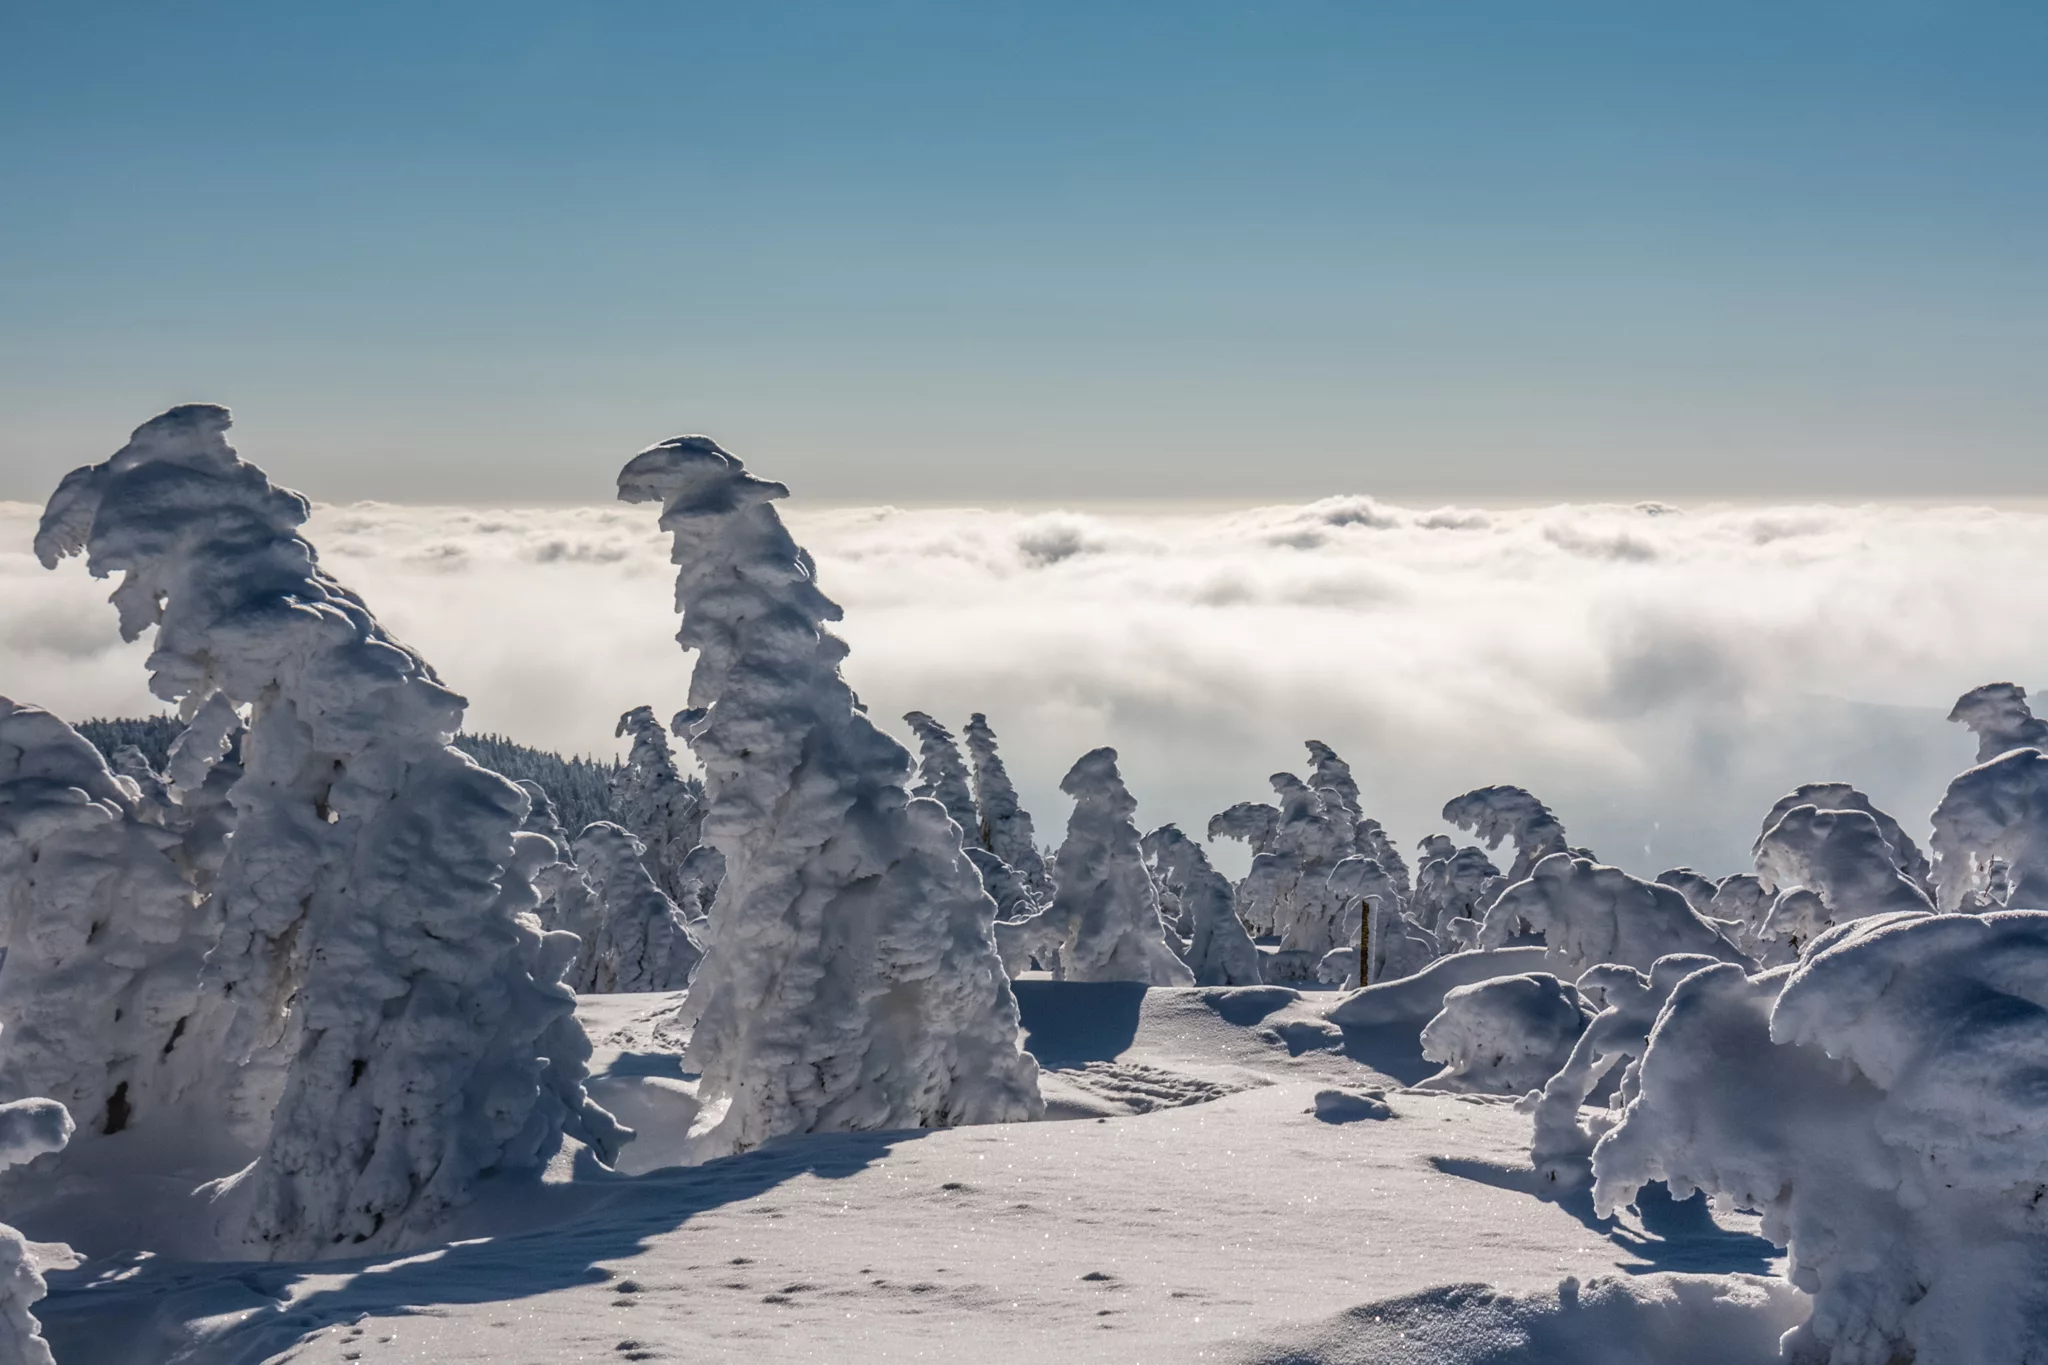 Frozen Troll Army on the Brocken summit, Germany